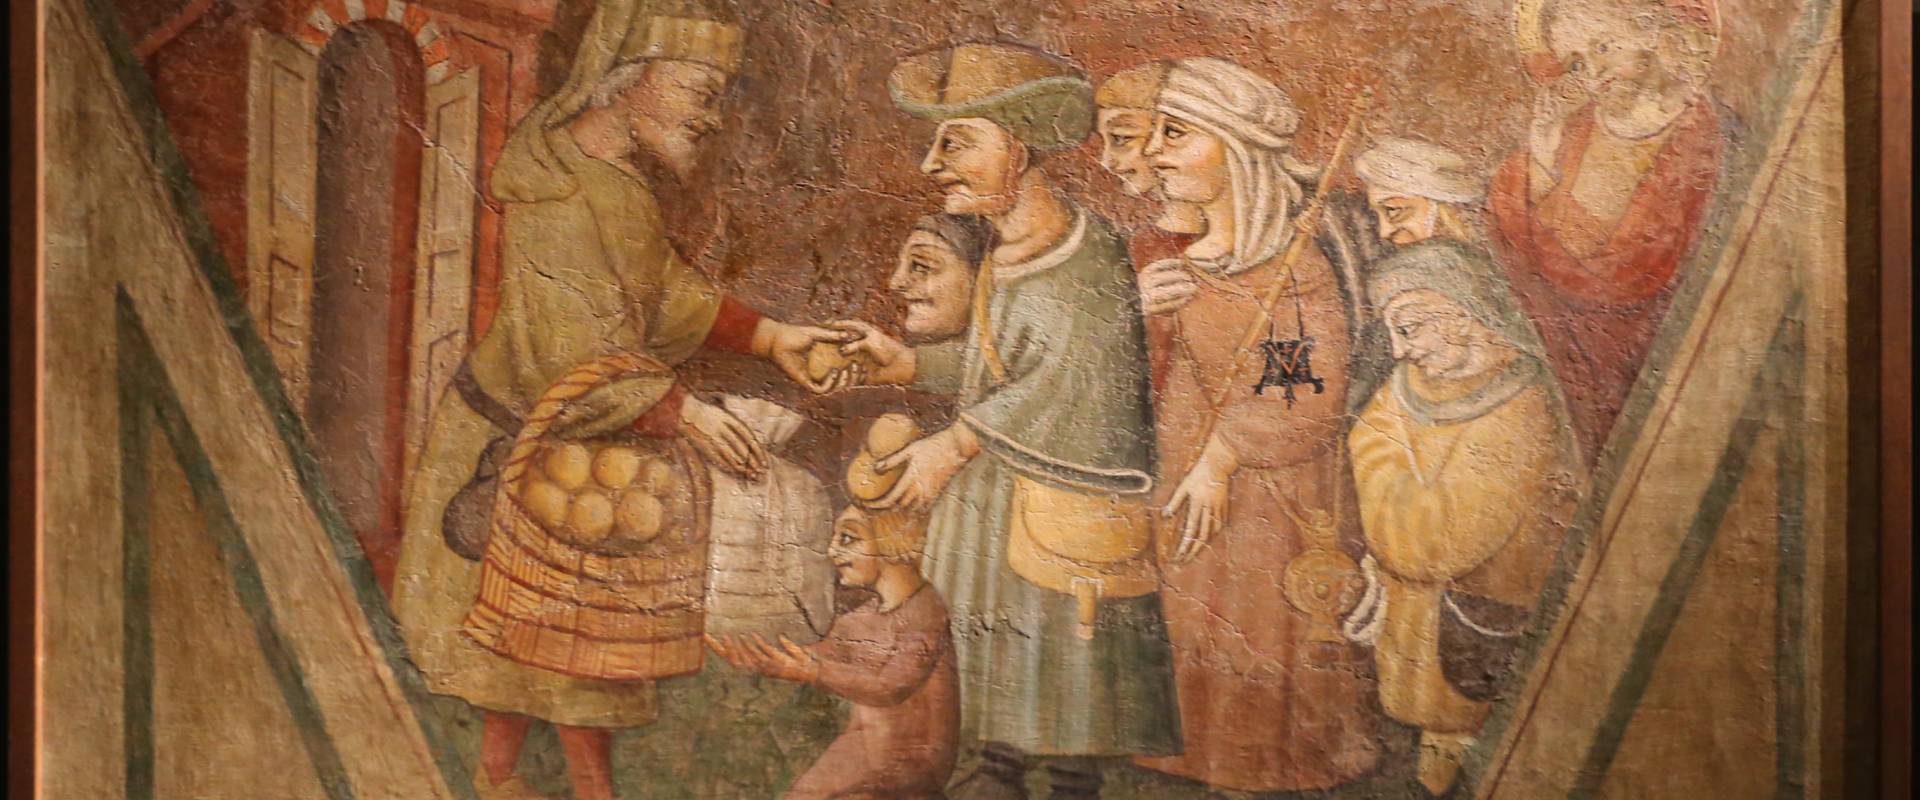 Scuola parmense, opere di misericordia, 1450 ca., sfamare gli affamati foto di Sailko